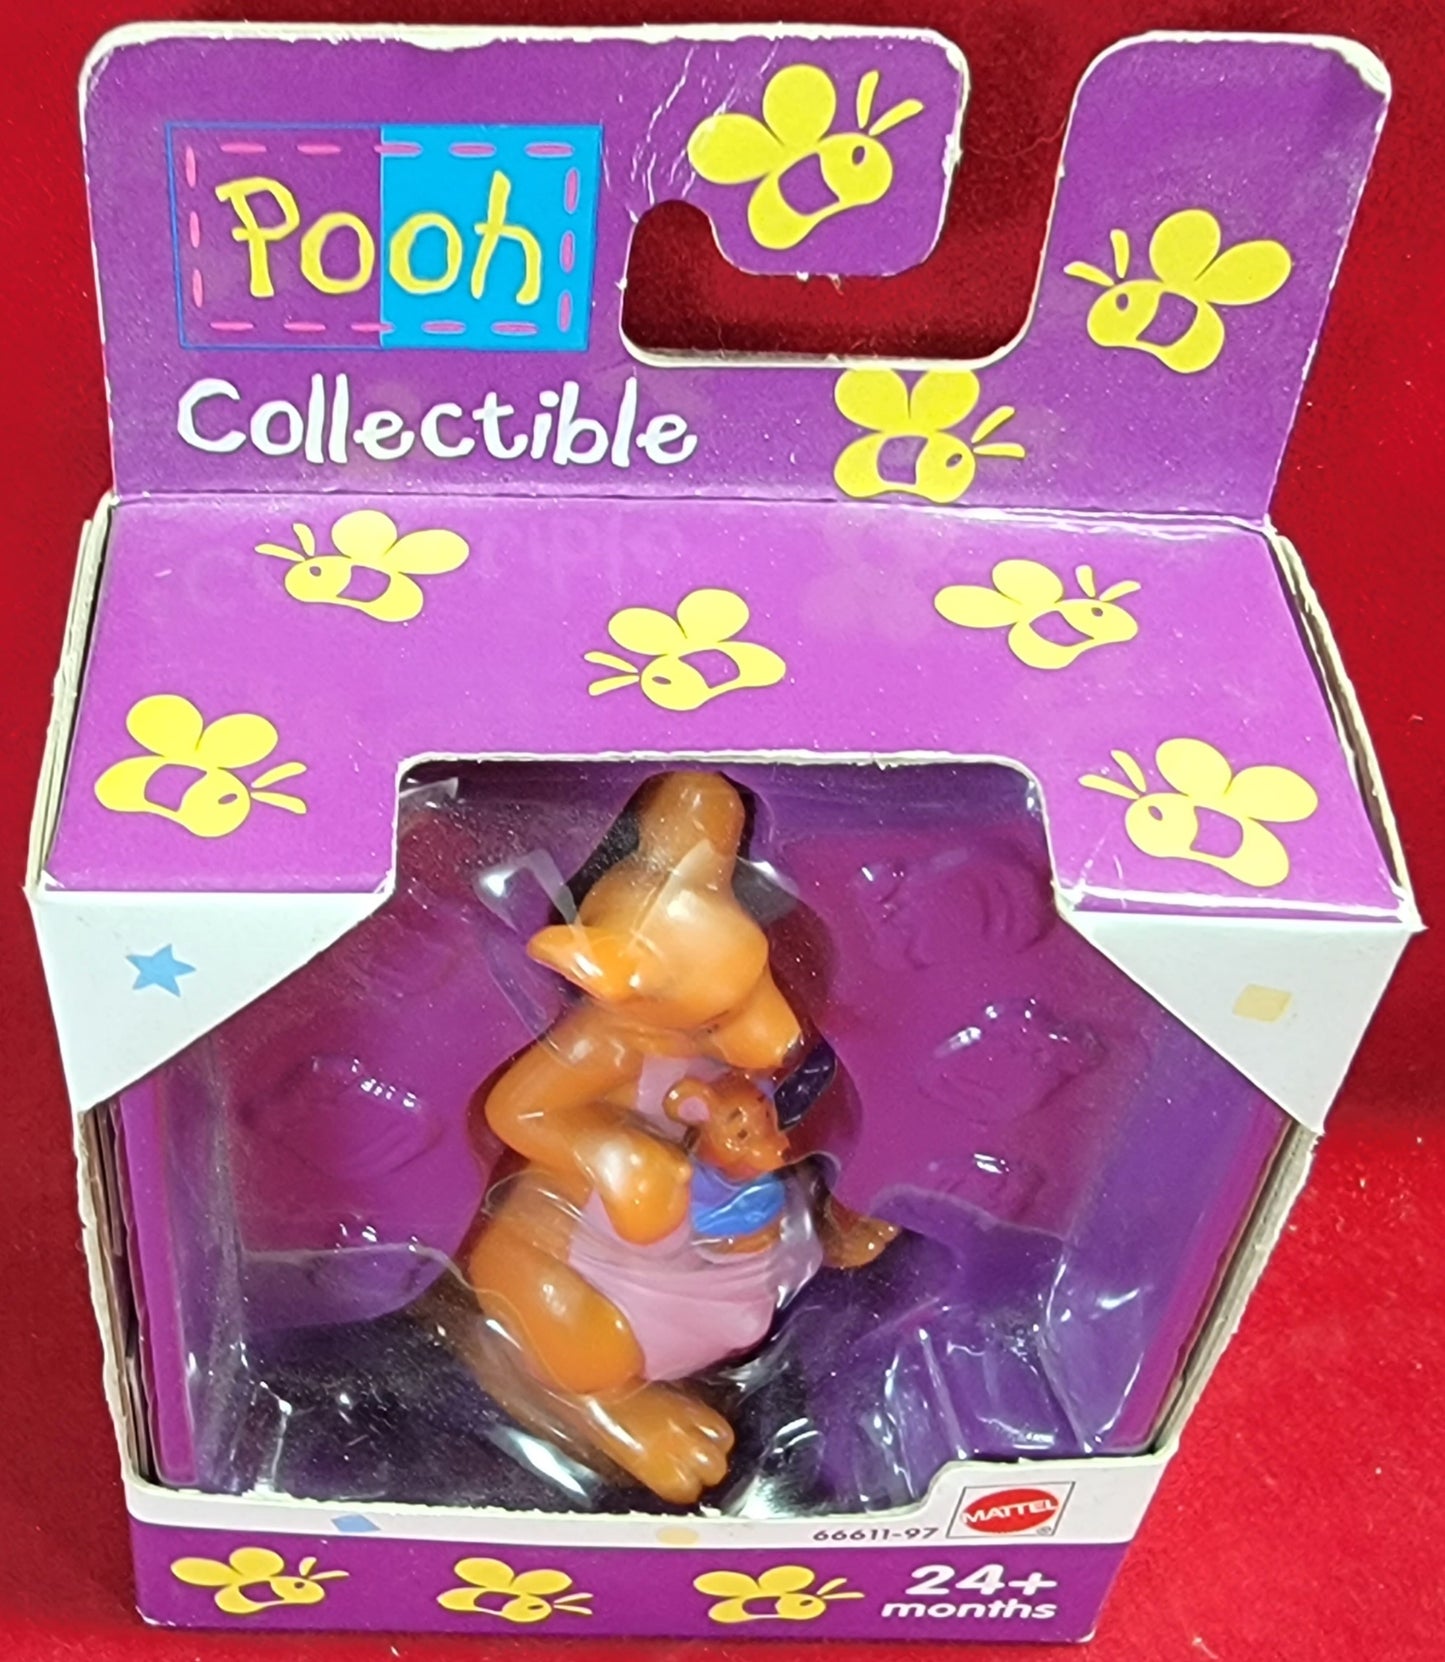 Pooh collectible kanga and roo figure (nib)